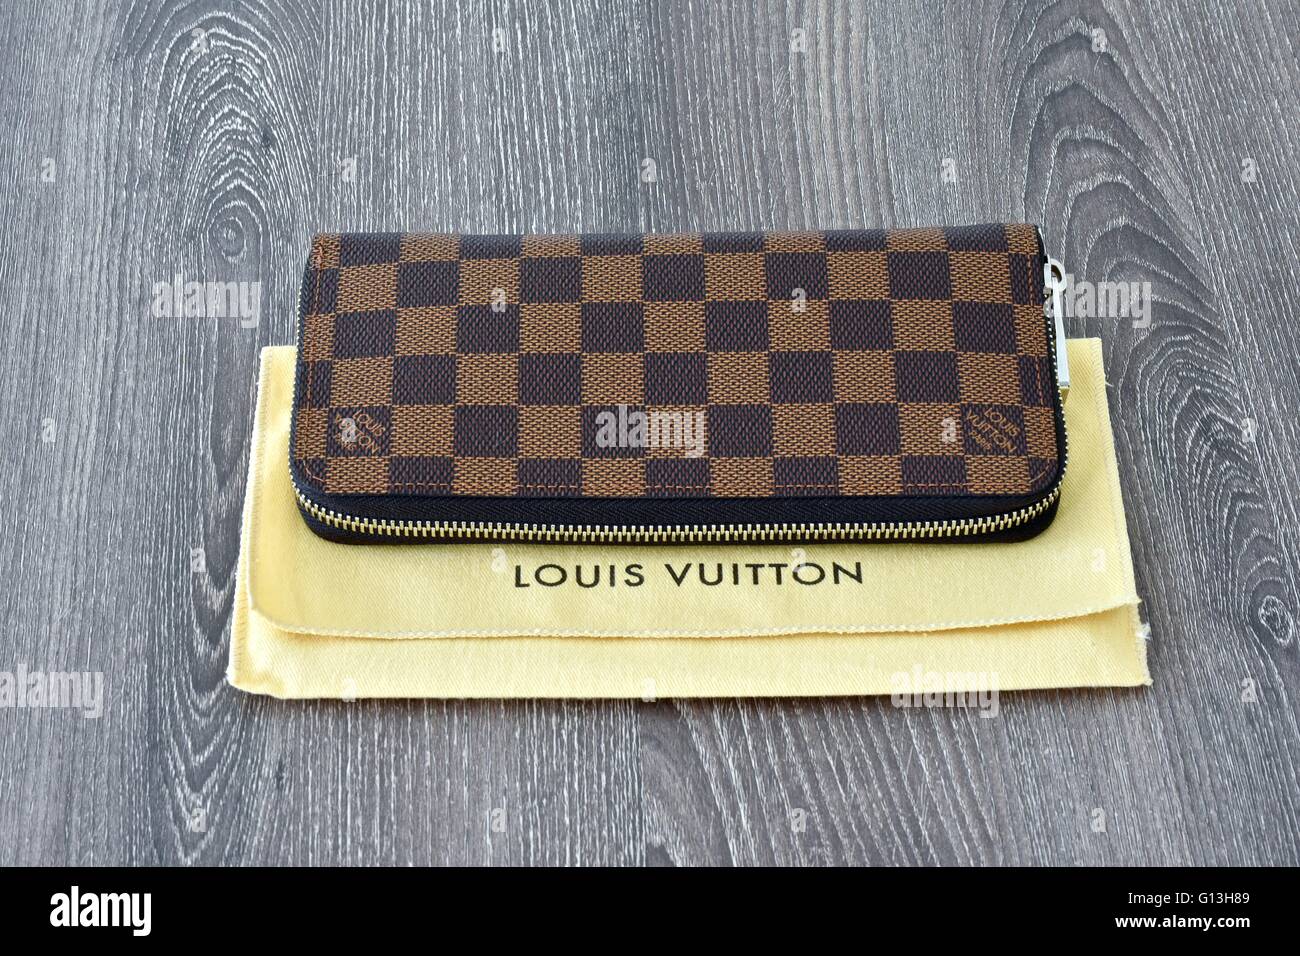 Louis Vuitton, Spain – Stock Editorial Photo © tupungato #86242308